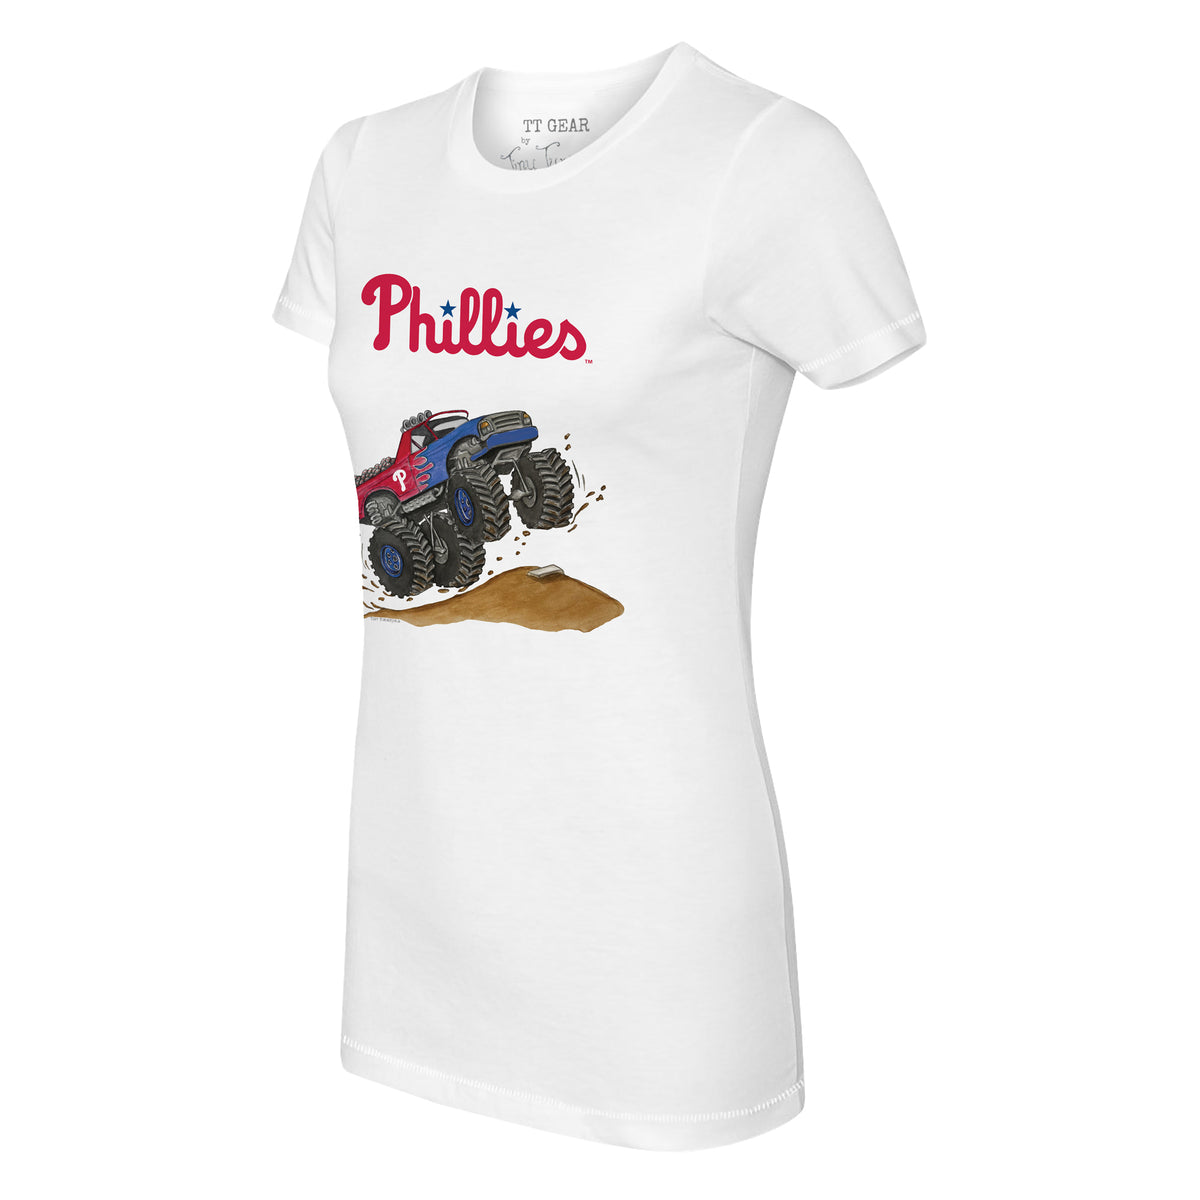 Philadelphia Phillies Monster Truck Tee Shirt